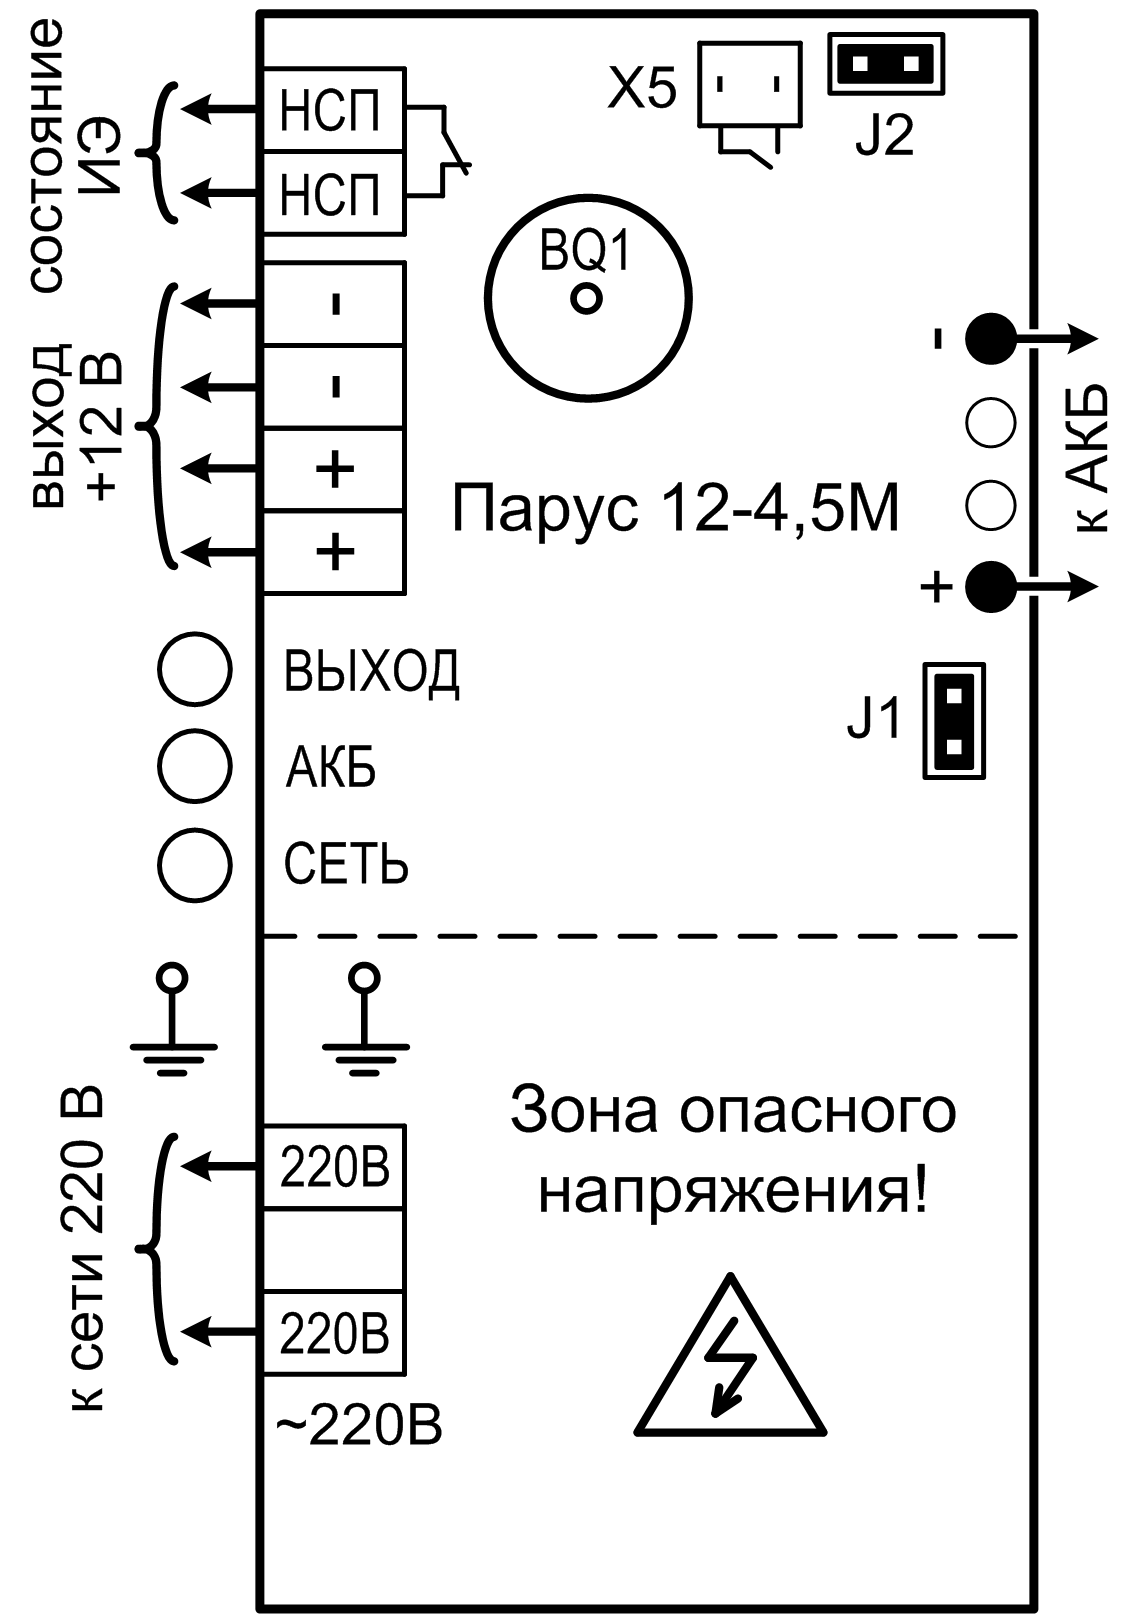 Источник питания Сибирский Арсенал Парус 12-4,5М. Изображение  1